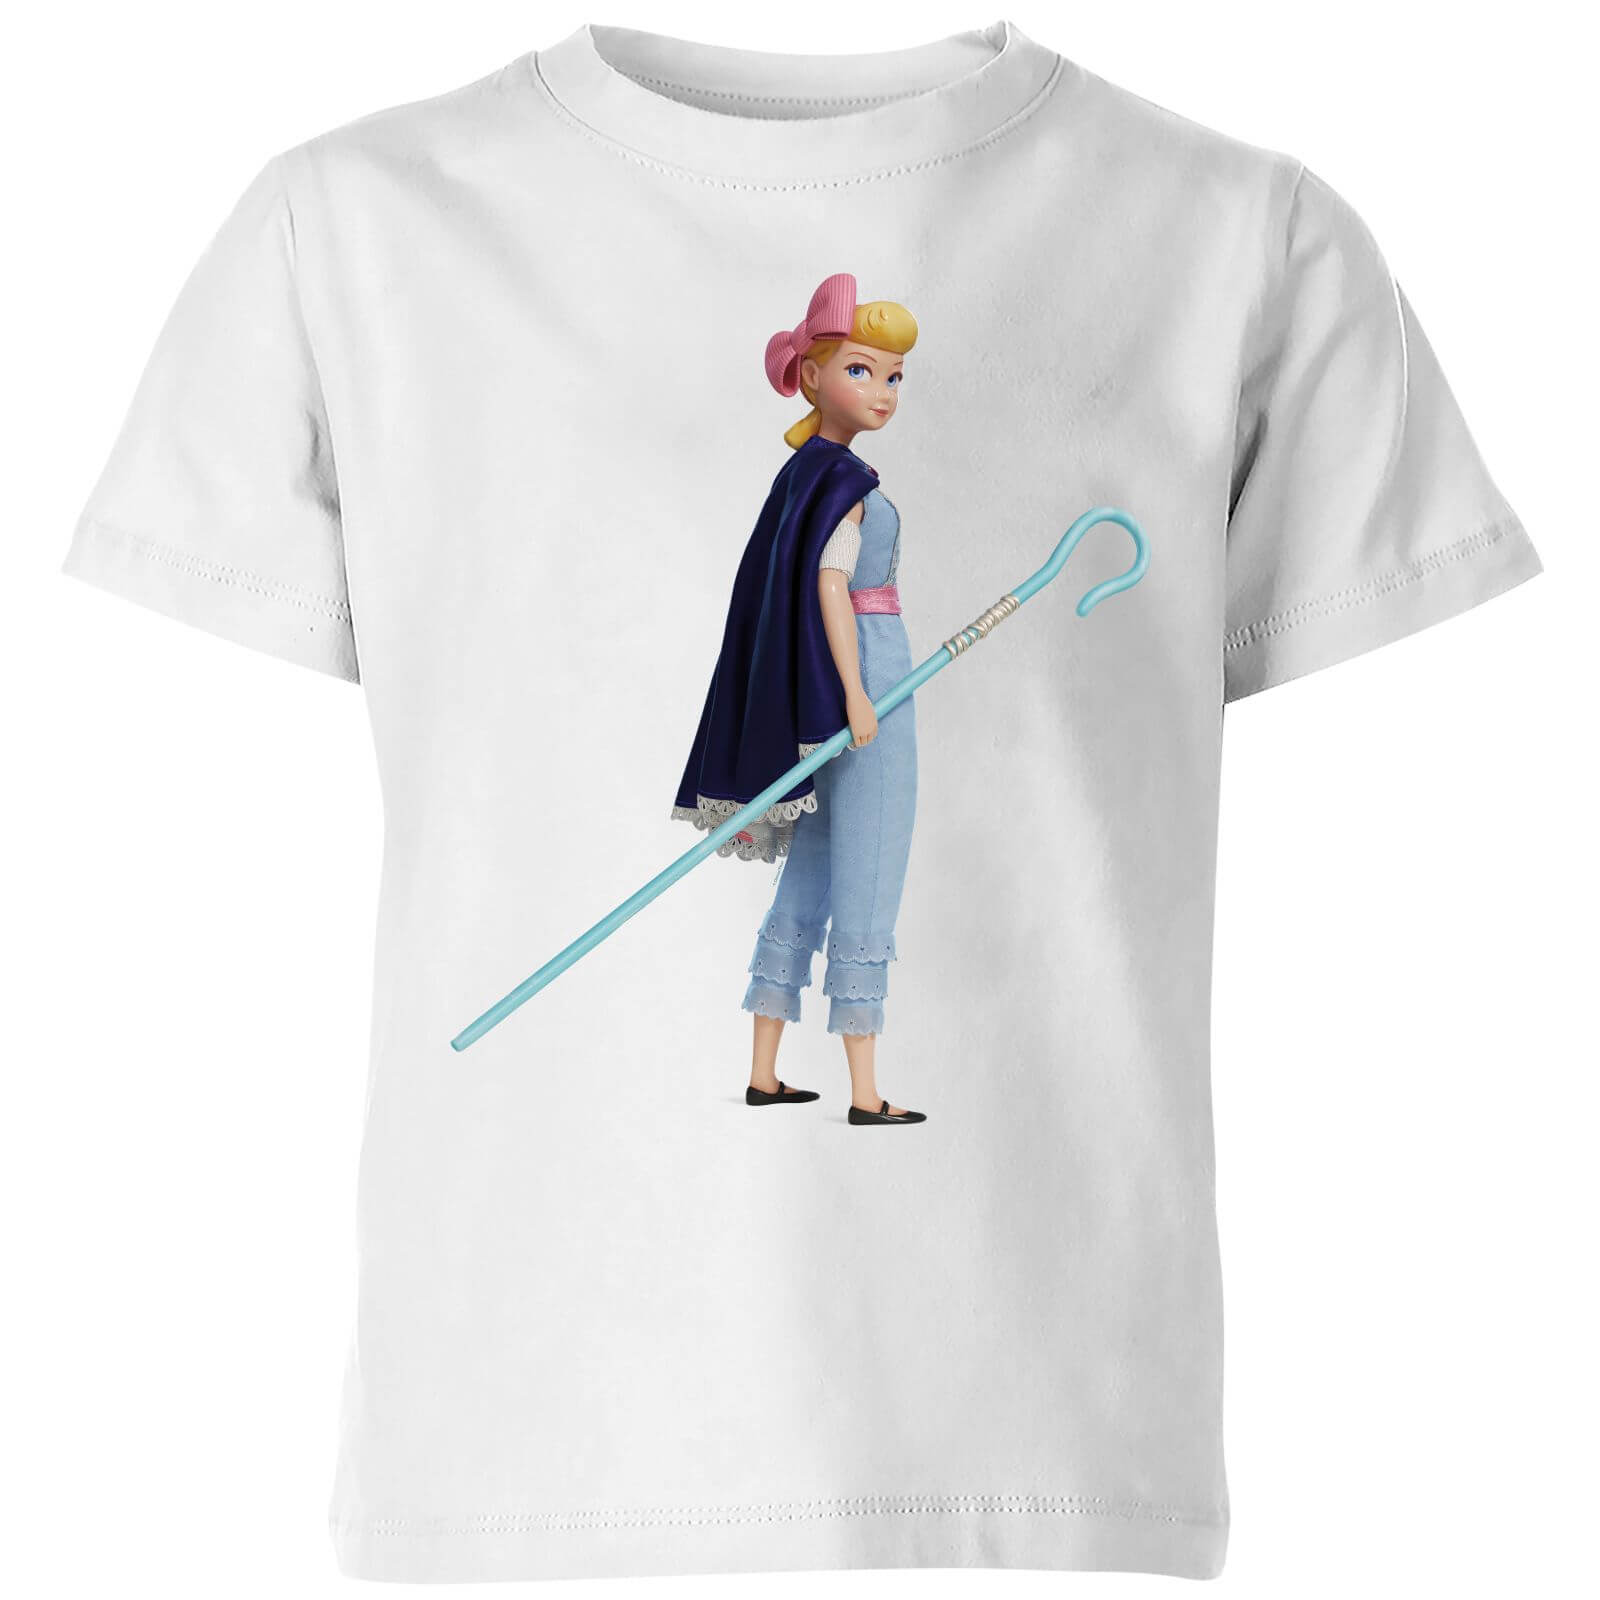 Toy Story 4 Bo Peep Kids' T-Shirt - White - 7-8 Years - White